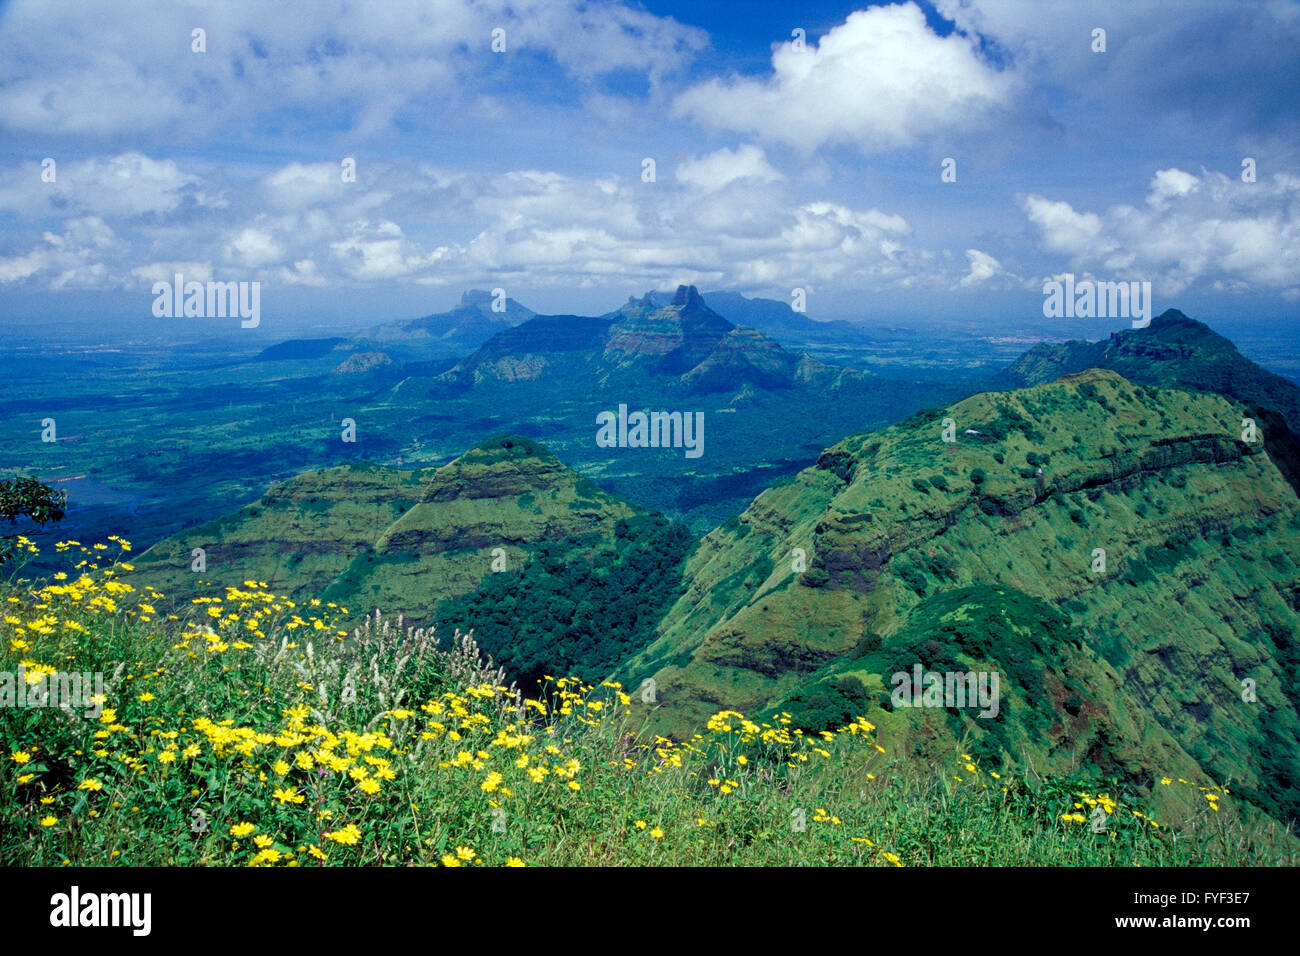 The image of Landscape in Matheran, Maharashtra, India Stock Photo